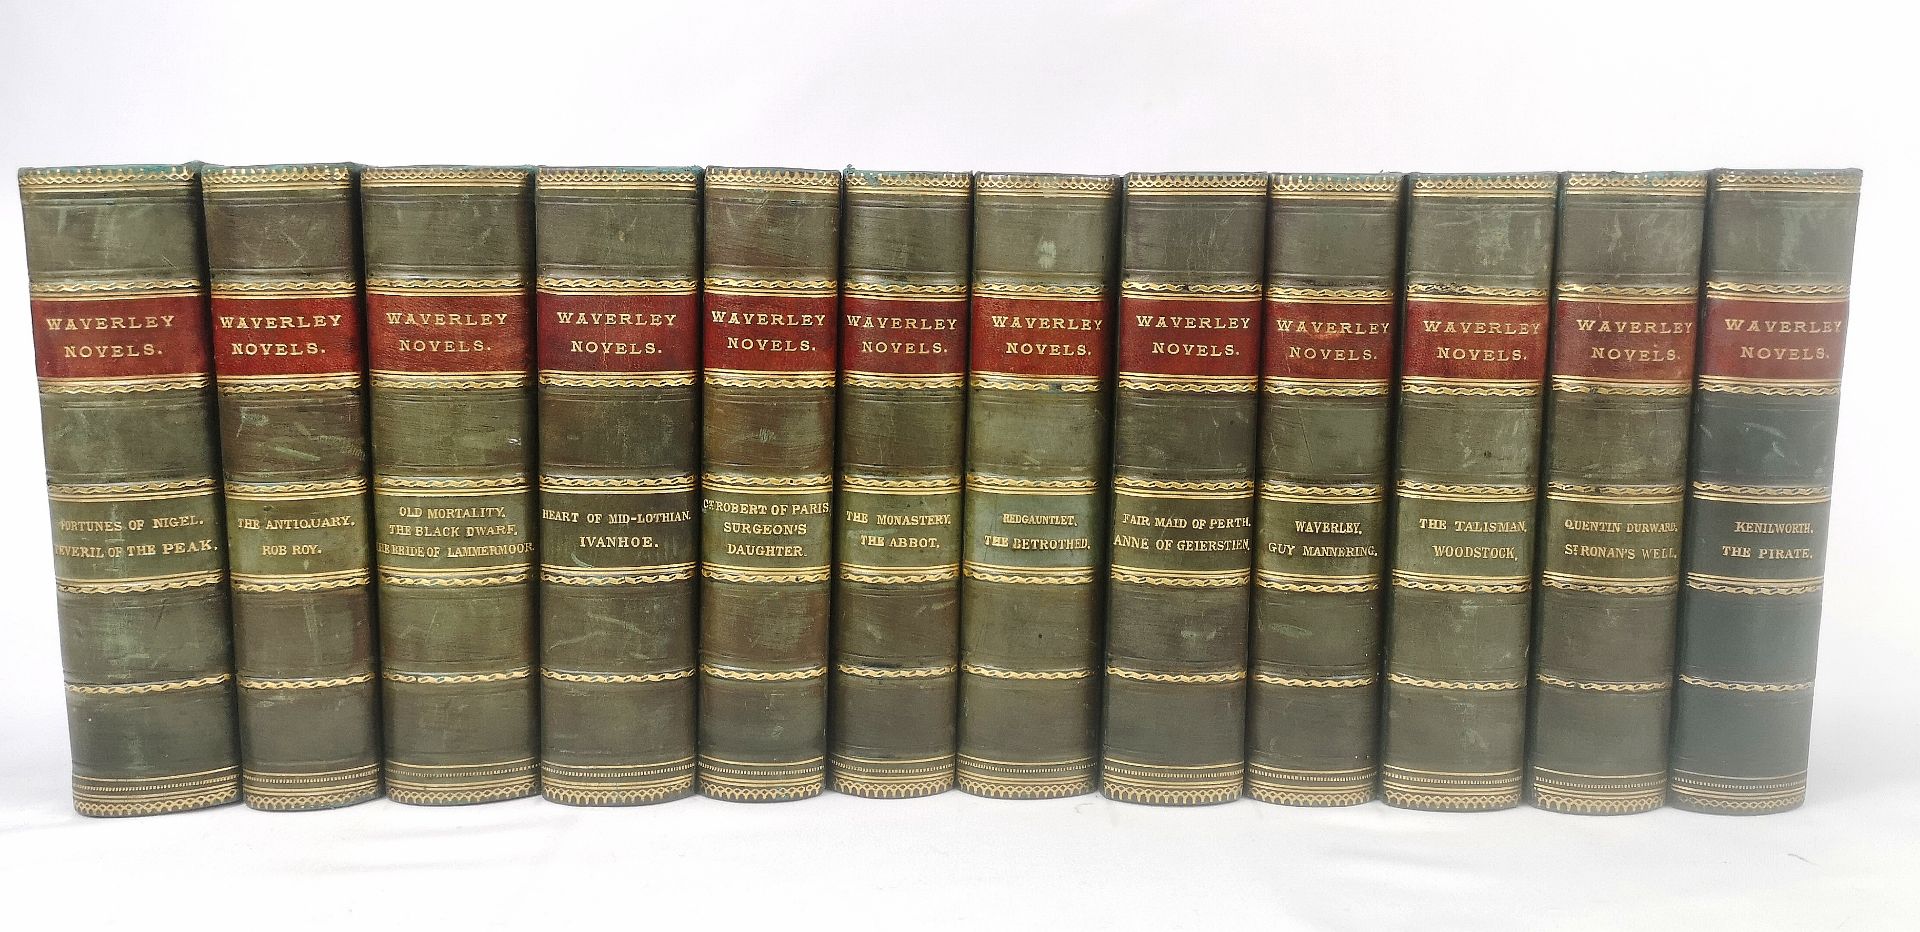 The Waverley Novels by Sir Walter Scott, twelve half bound volumes